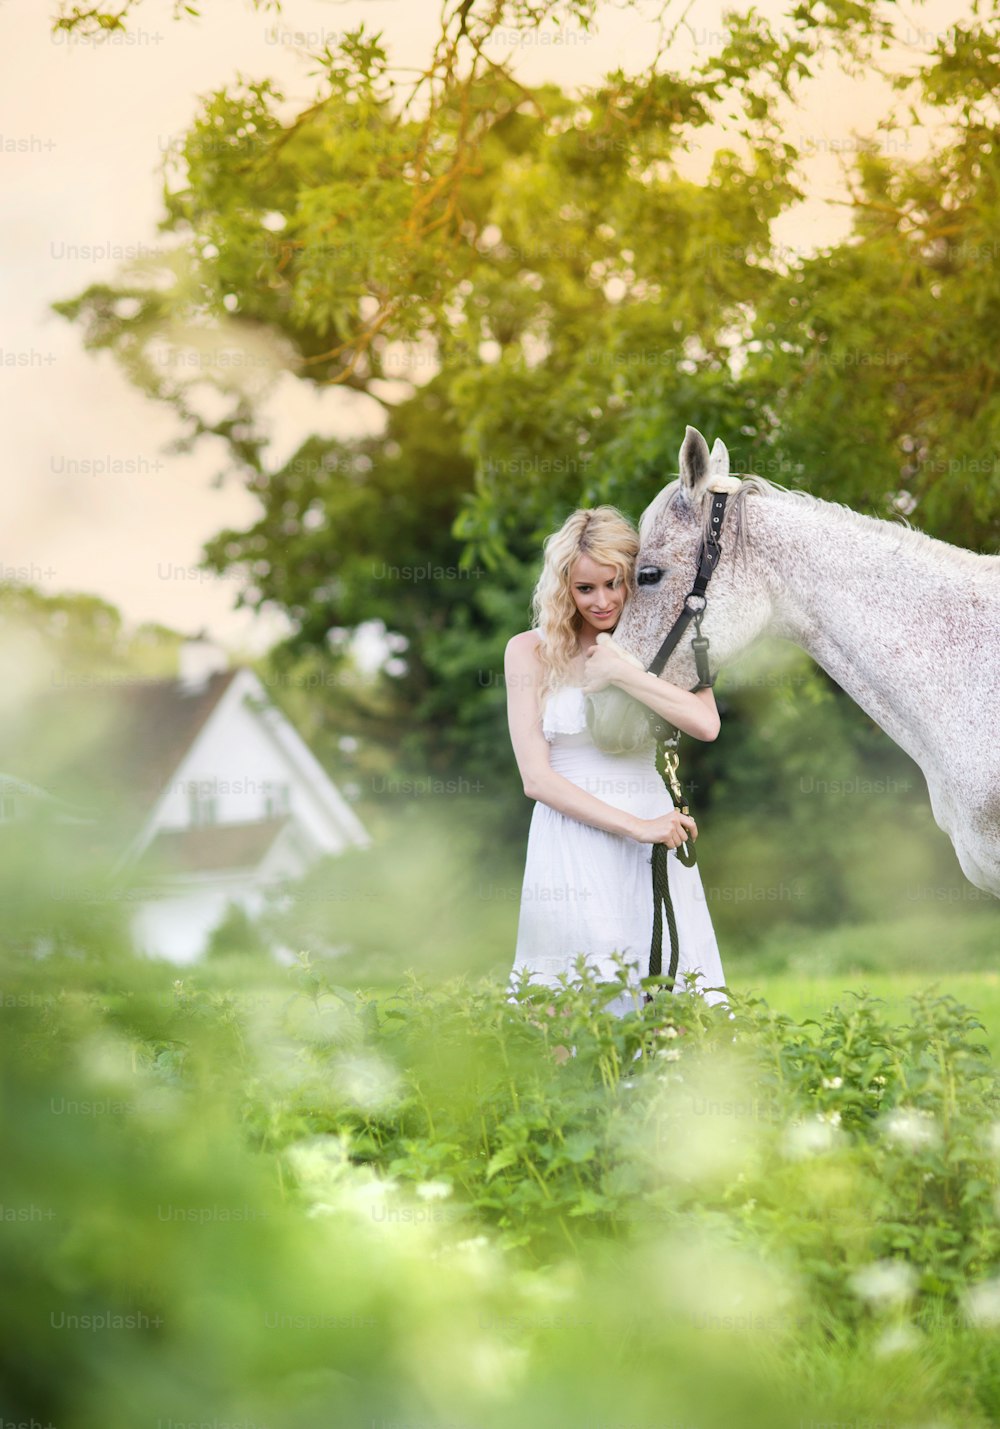 Frau im weißen Kleid geht mit Pferd in grüner Landschaft spazieren